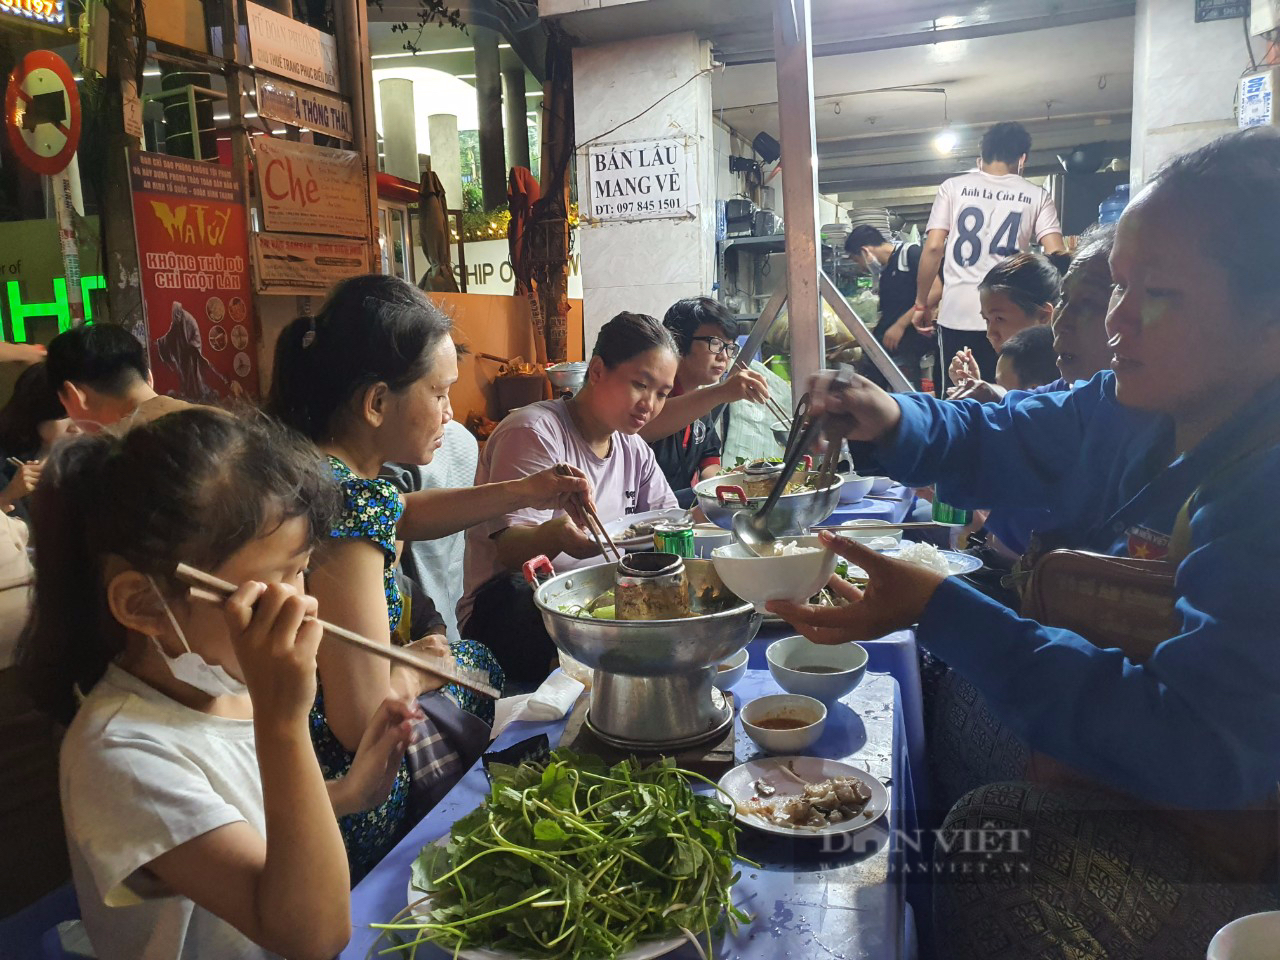 Sài Gòn quán: Lẩu mắm miền Tây đầy ắp cá, lươn, vị đậm đà, khách ngồi chờ cả tiếng mới được ăn - Ảnh 6.